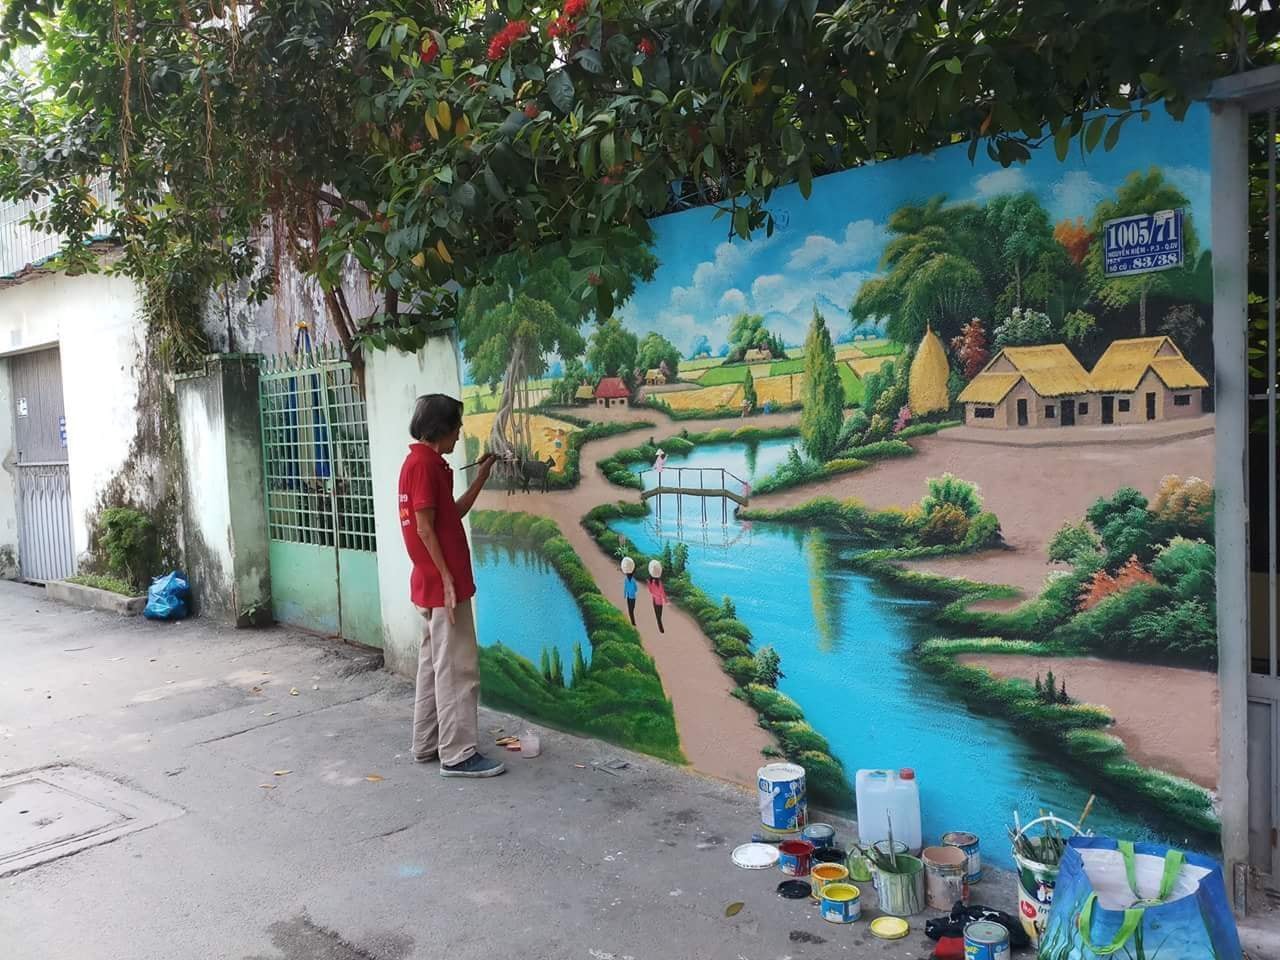 Xuất hiện tác phẩm “graffiti phiên bản đồng quê” tuyệt đẹp giữa Sài Gòn